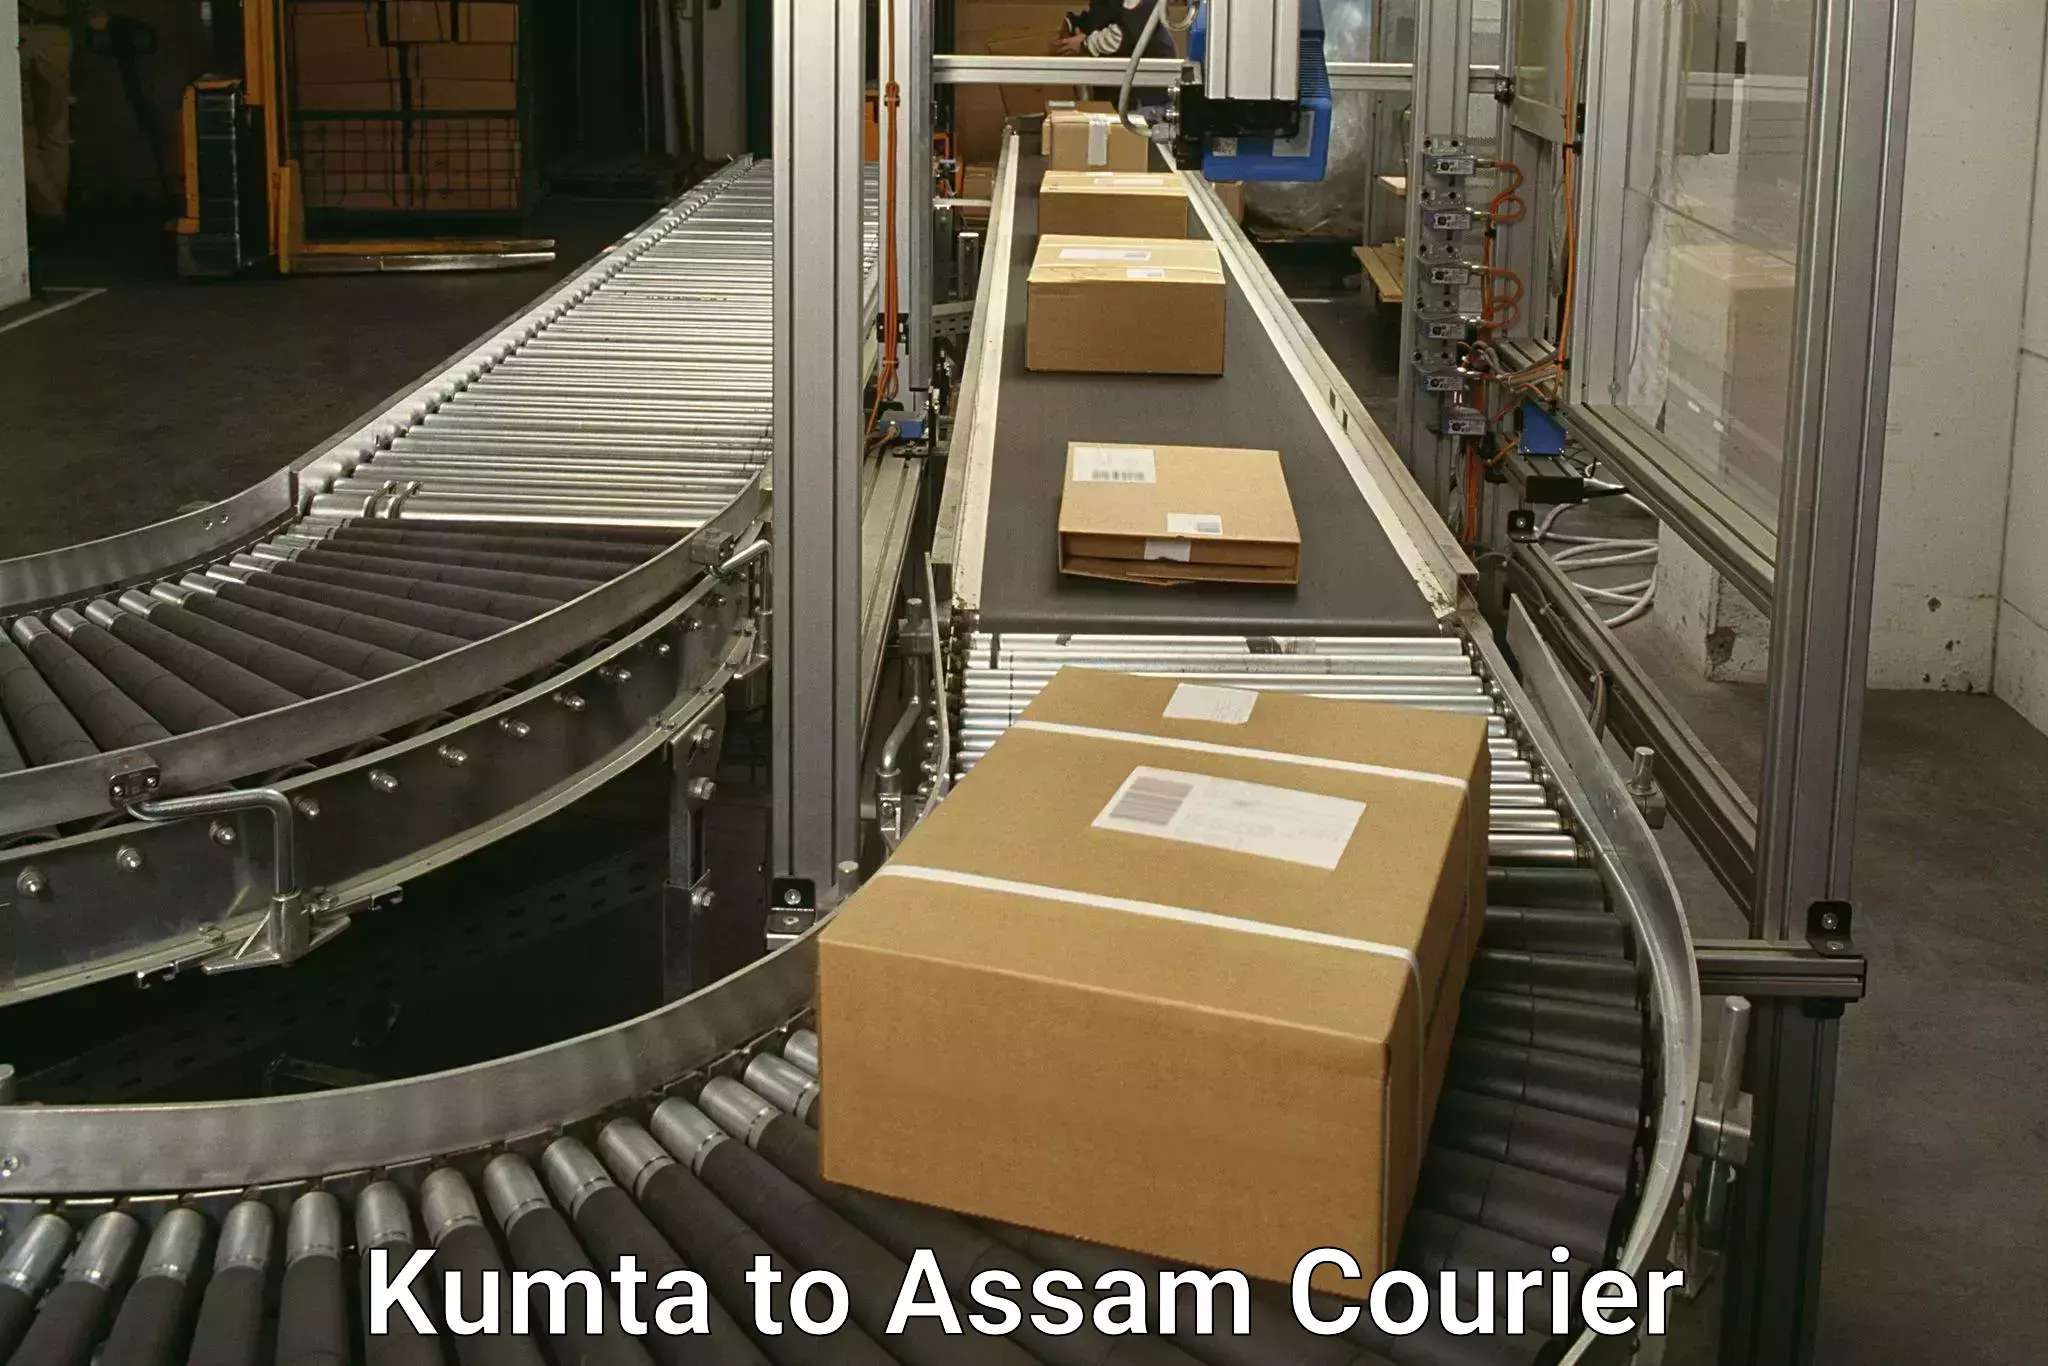 Express postal services Kumta to Assam